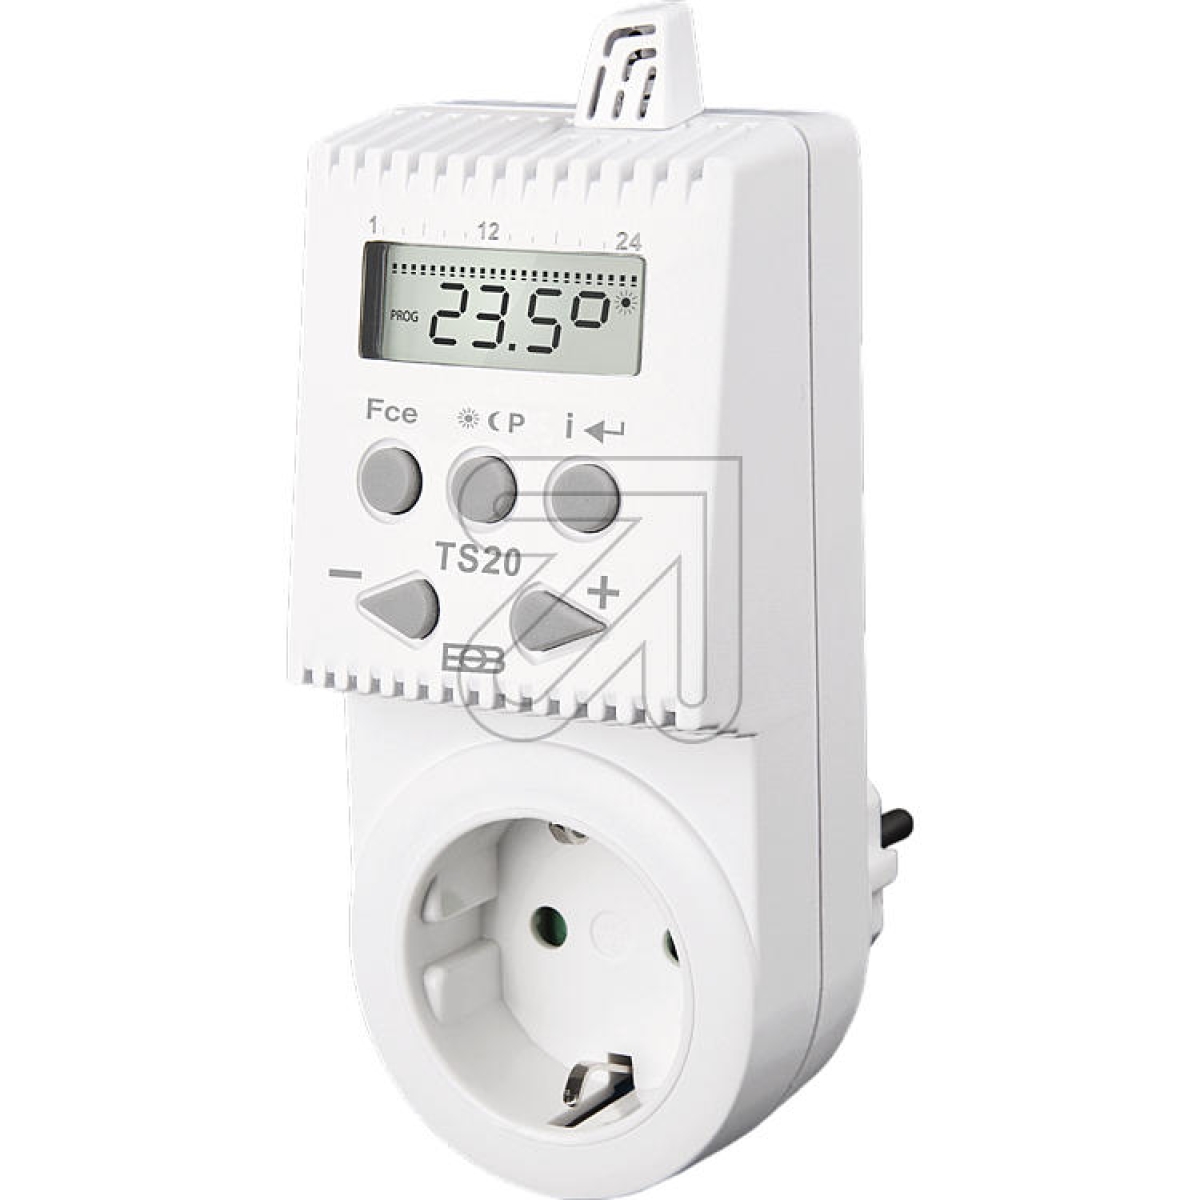 ELEKTROBOCK DE GmbHTemperature-dependent switched socket TS 20Article-No: 115630